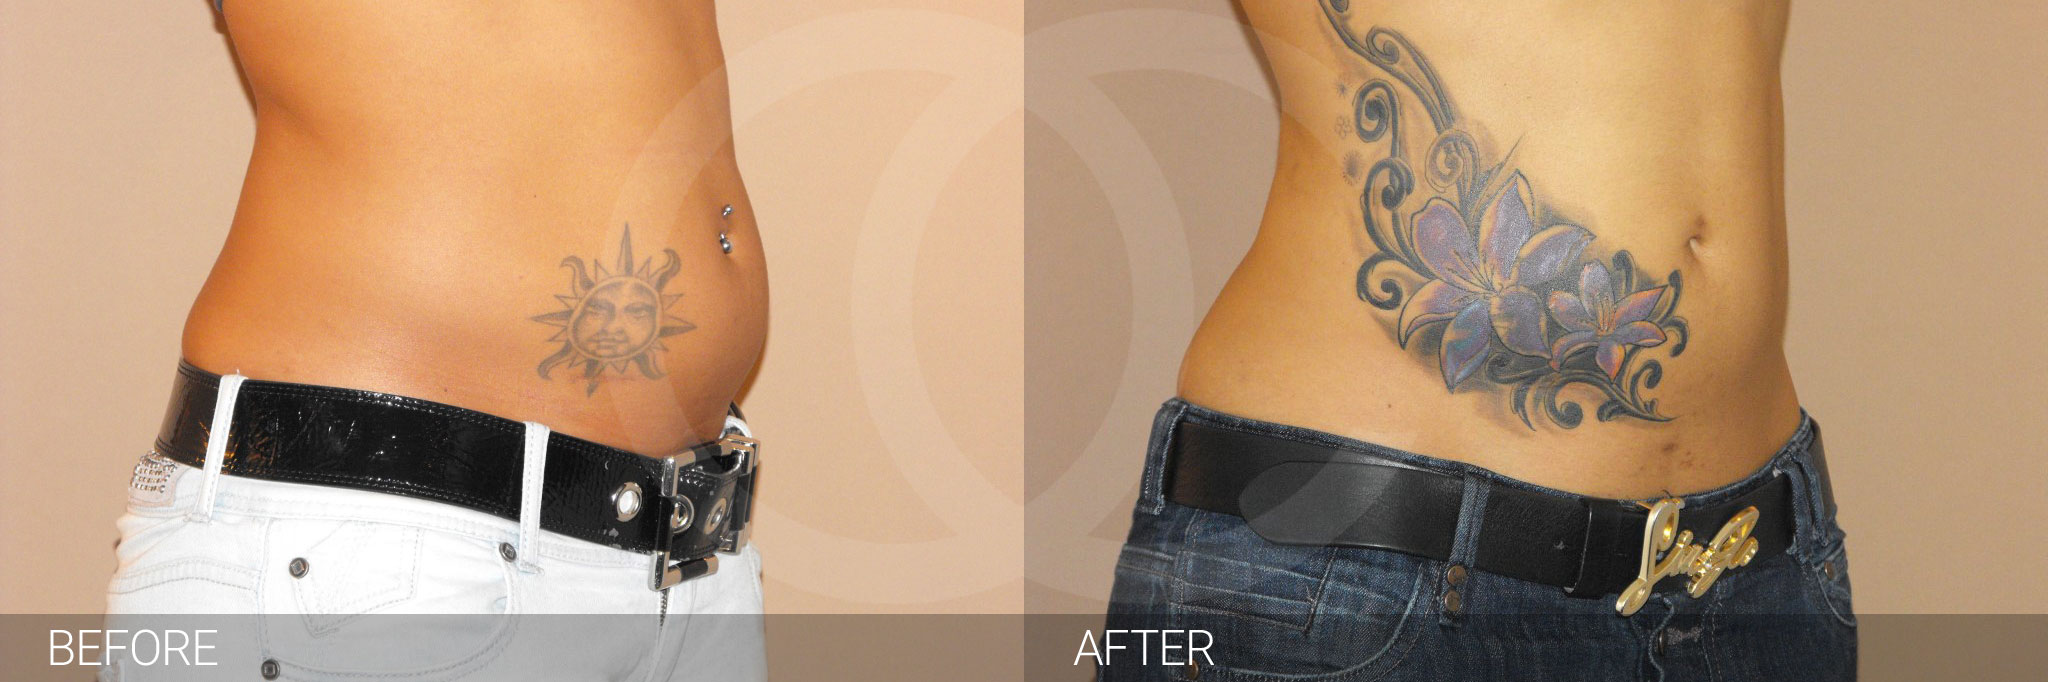 Antes y después Fotos de eliminar grasa abdominal fotos reales de pacientes 2.2 | Ocean Clinic Marbella Madrid